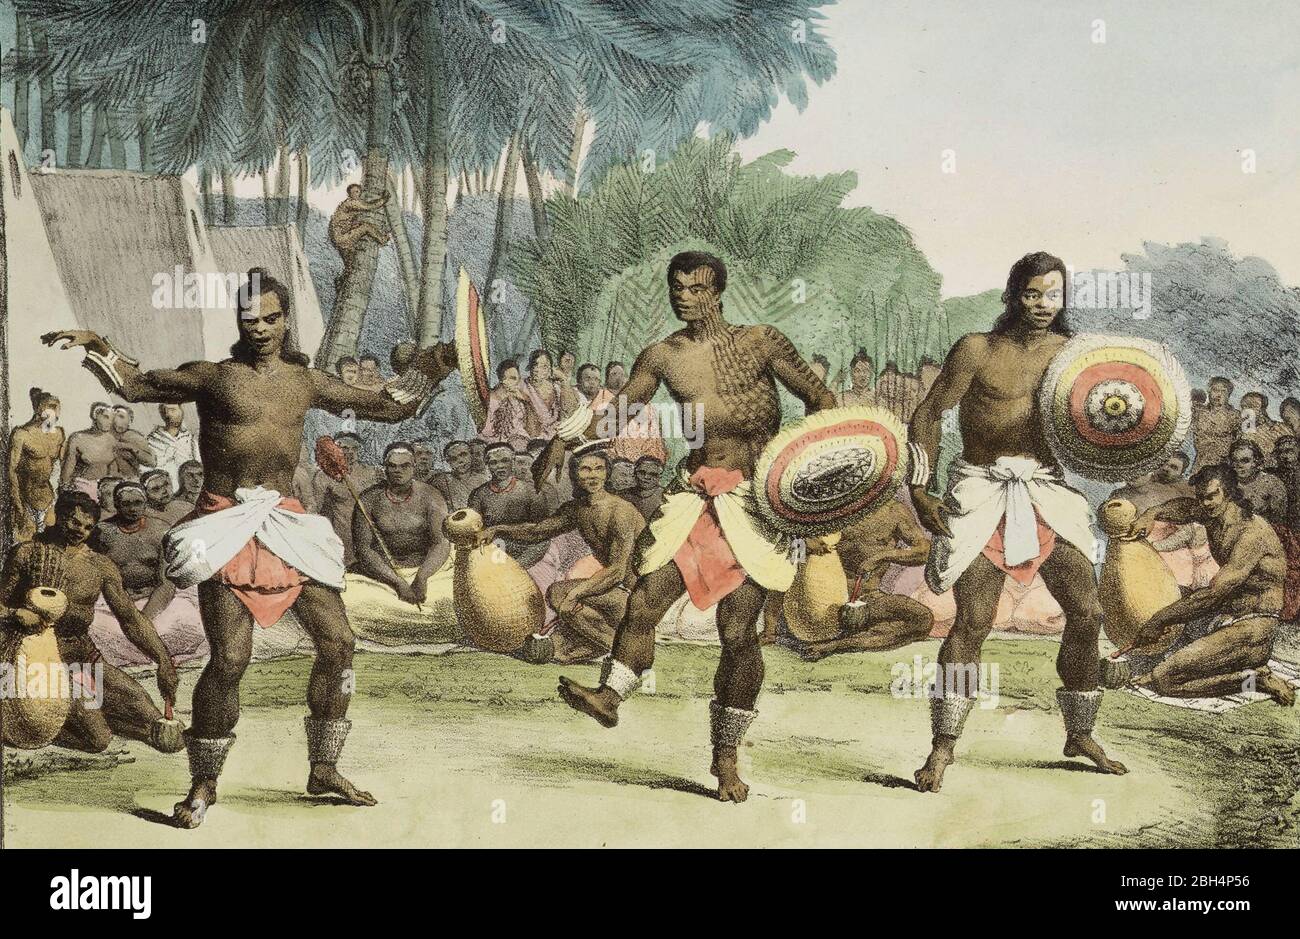 Drei hawaiianische Männer tanzen, umgeben von einem Ring von Zuschauern, mehrere halten Trommeln. Im Hintergrund sind Kokospalmen und die Seiten mehrerer Wohnungen zu sehen. Die Tänzer tragen Röcke und Fußknöchel und halten Schilde - Louis Choris, 1816 Stockfoto